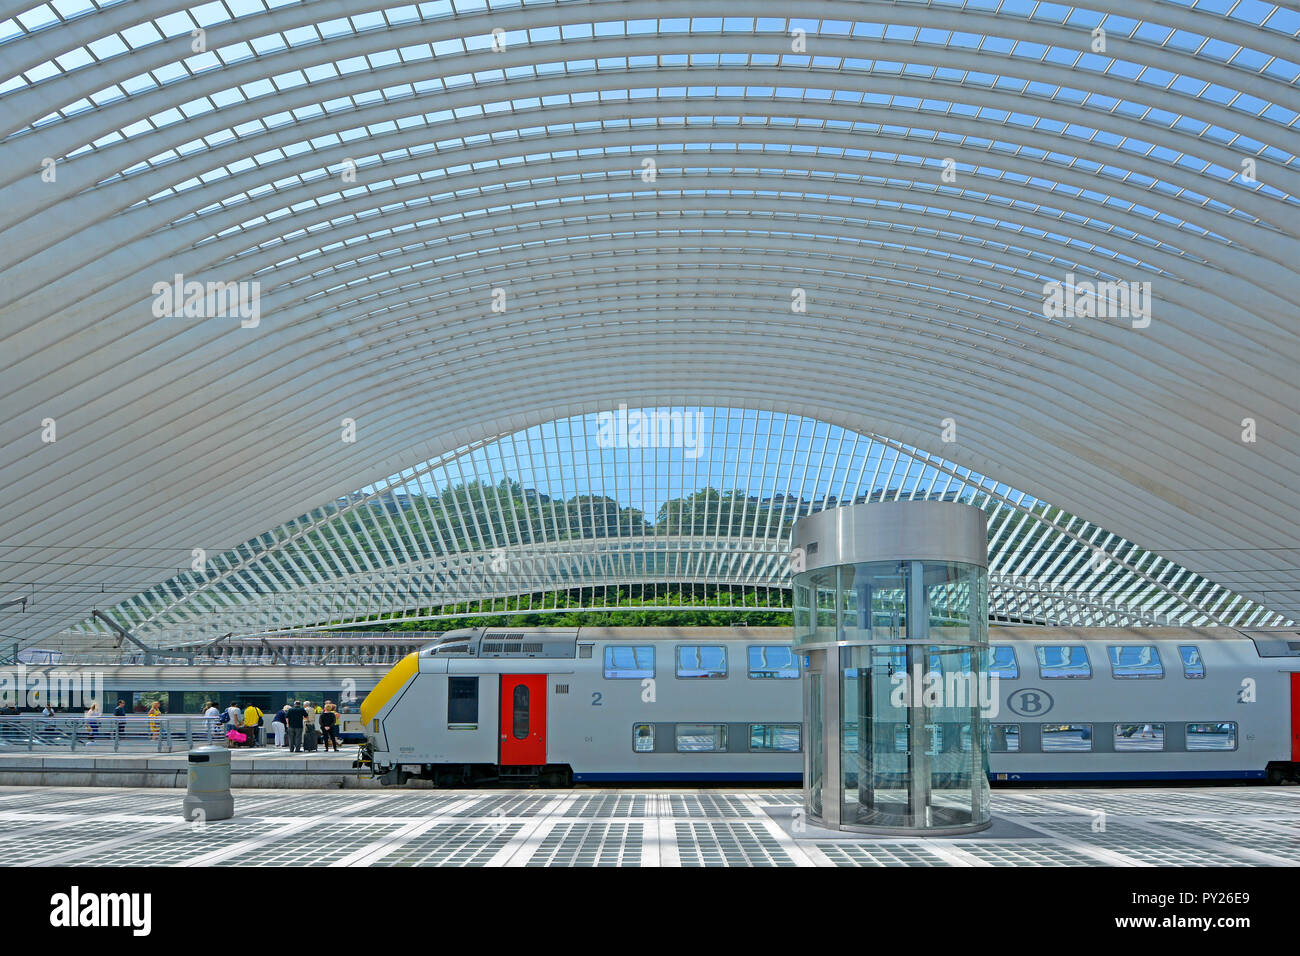 Riesige symmetrische Glasdach Gebäude Kurven über moderne öffentliche Verkehrsmittel Struktur Lüttich Belgien Bahn & Kutschen warten am Bahnhof Plattform EU Stockfoto